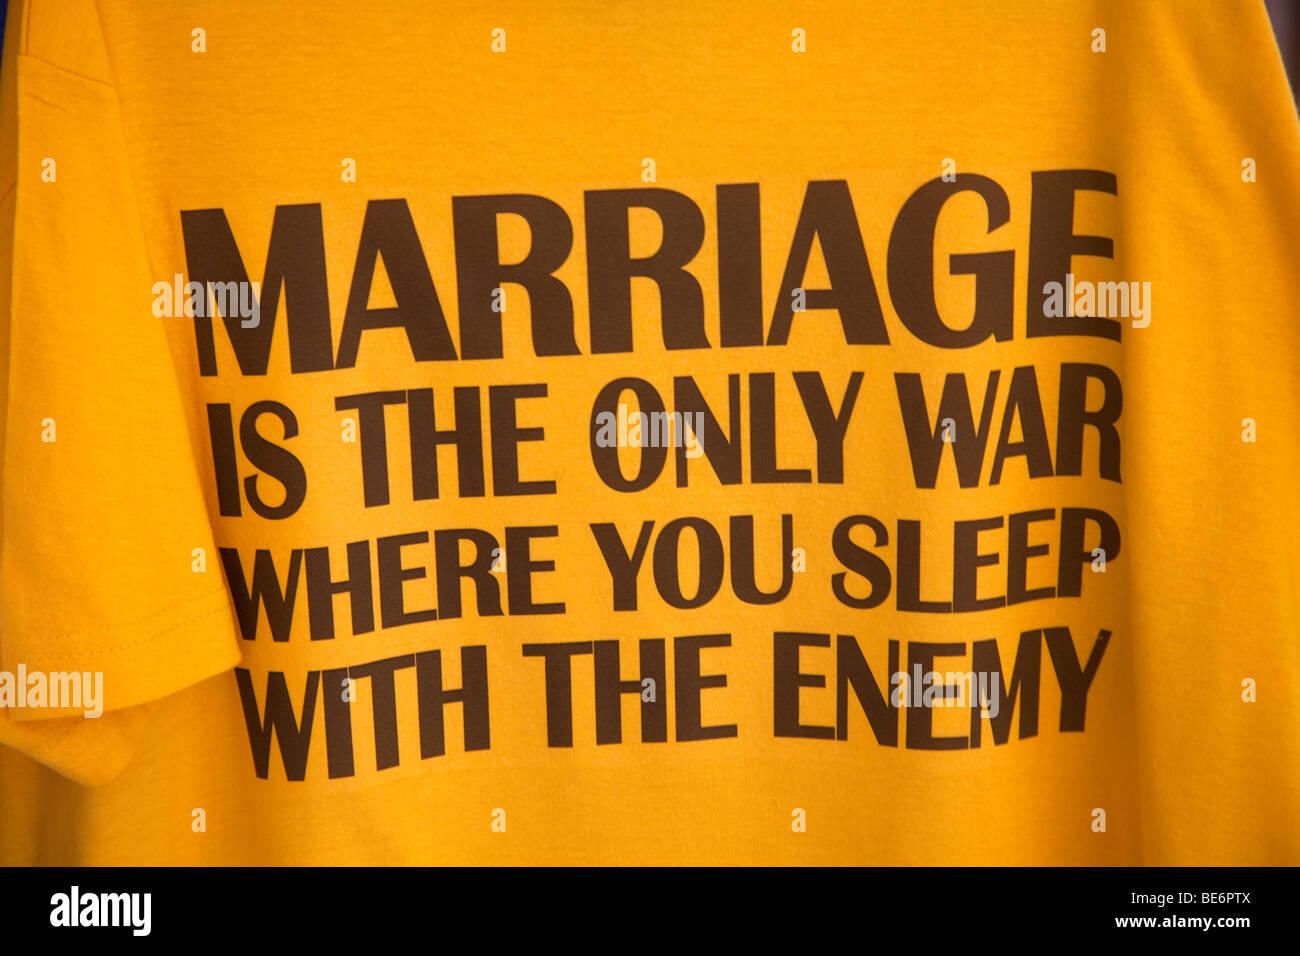 Phrase humoristique sur un t-shirt sur le mariage Banque D'Images